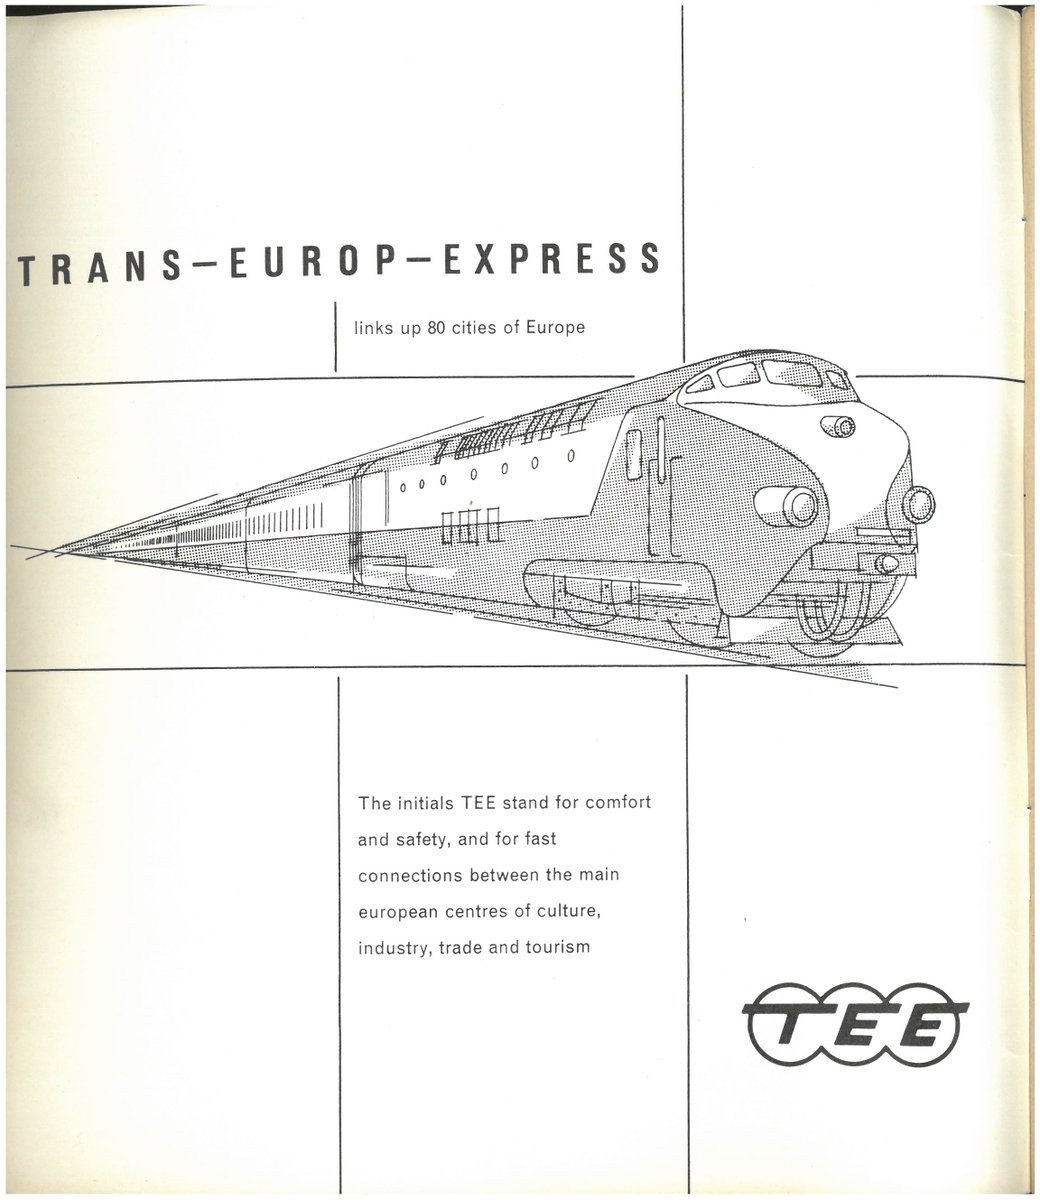 ¡Feliz #DíaDeEuropa!

Folleto de la red TEE Trans Europ Express (conectaba +80 ciudades europeas) que podéis consultar en nuestra #BibliotecaFerroviaria

Publicado en 1961 por el Centre d’Information des Chemins de Fer Européens, con info de itinerarios y conexiones ferroviarias